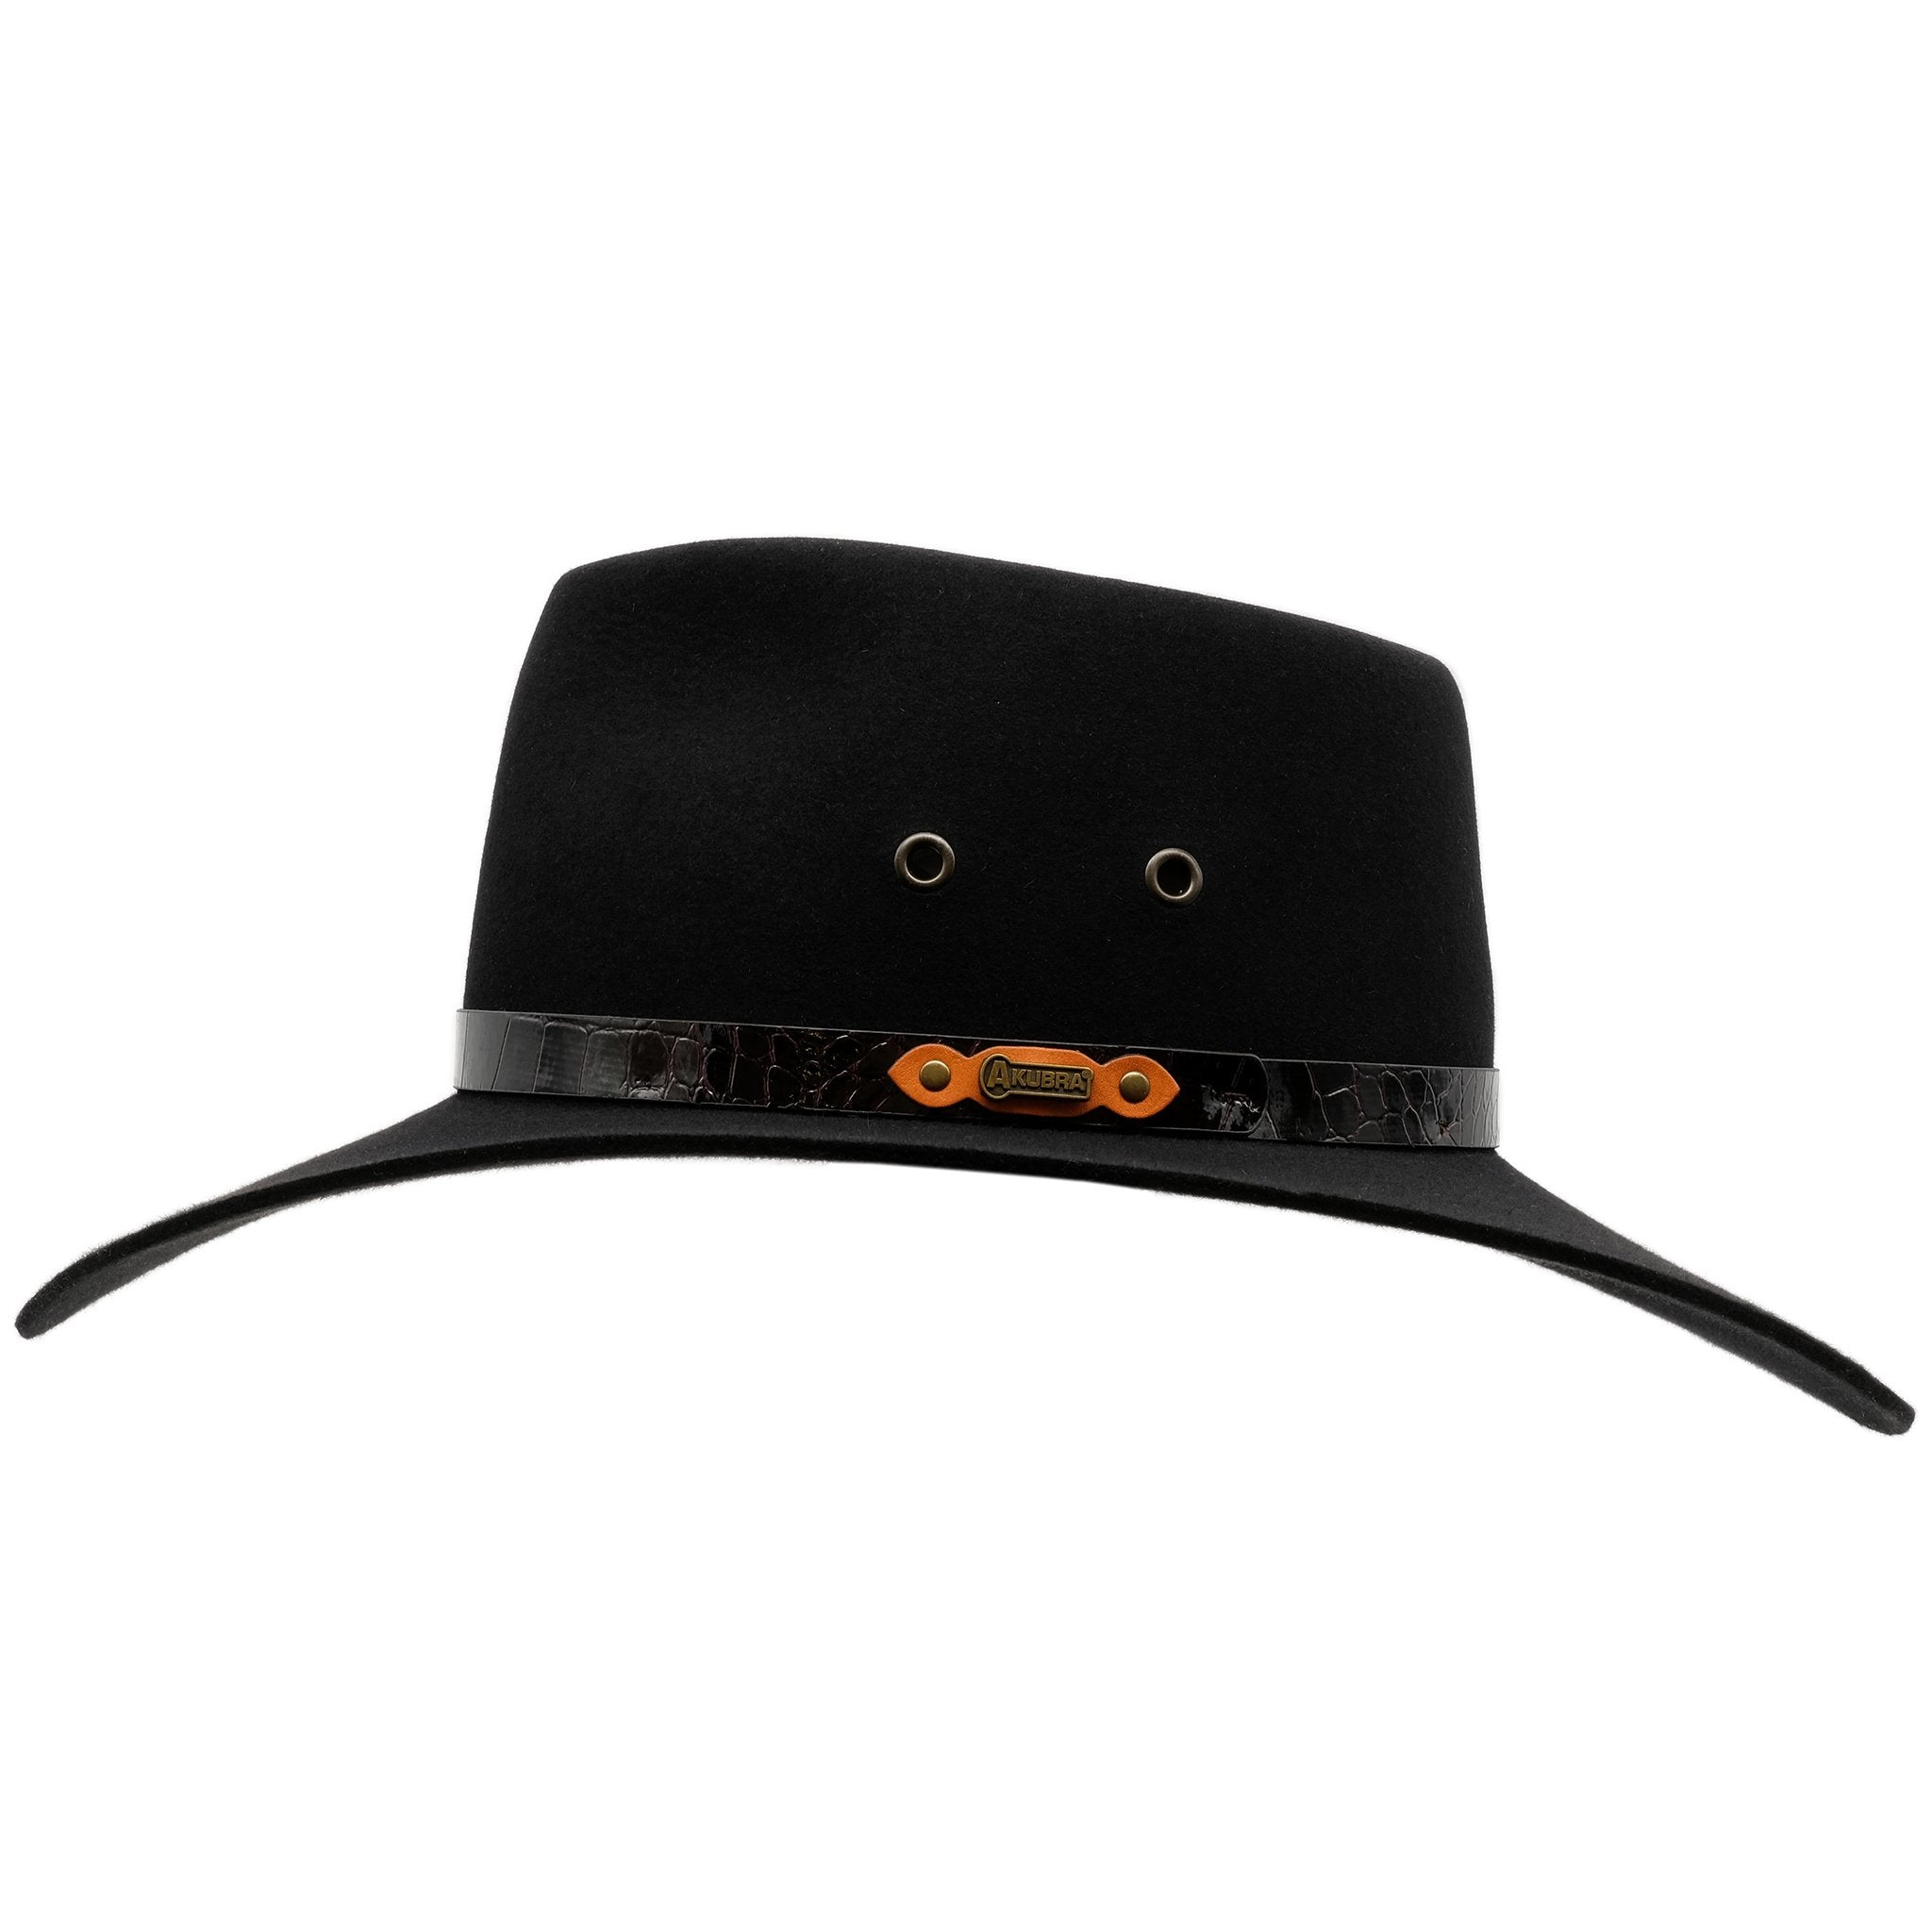 Side view image of Akubra Territory hat in black